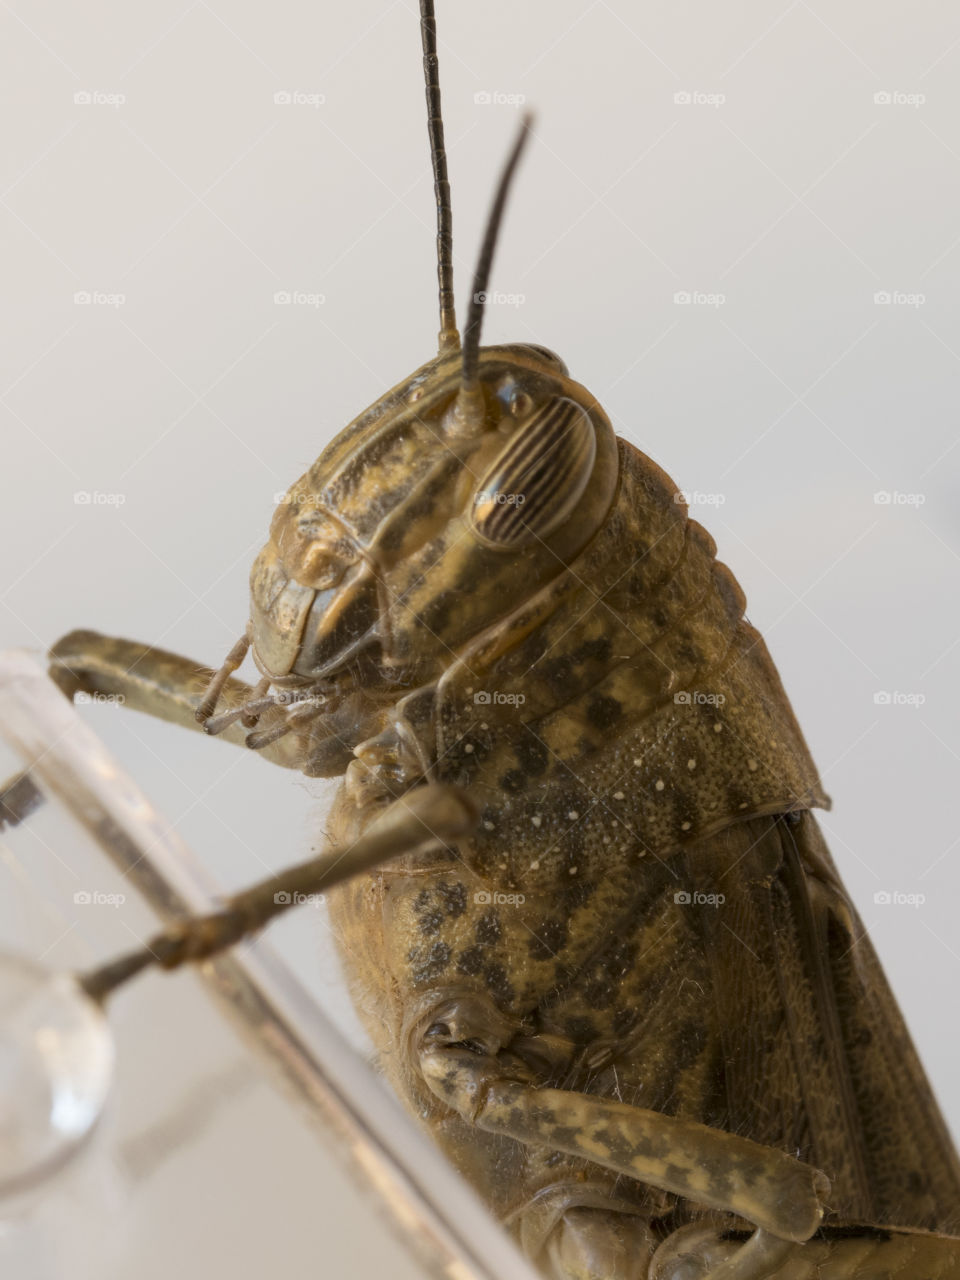 Grasshopper or locust close up